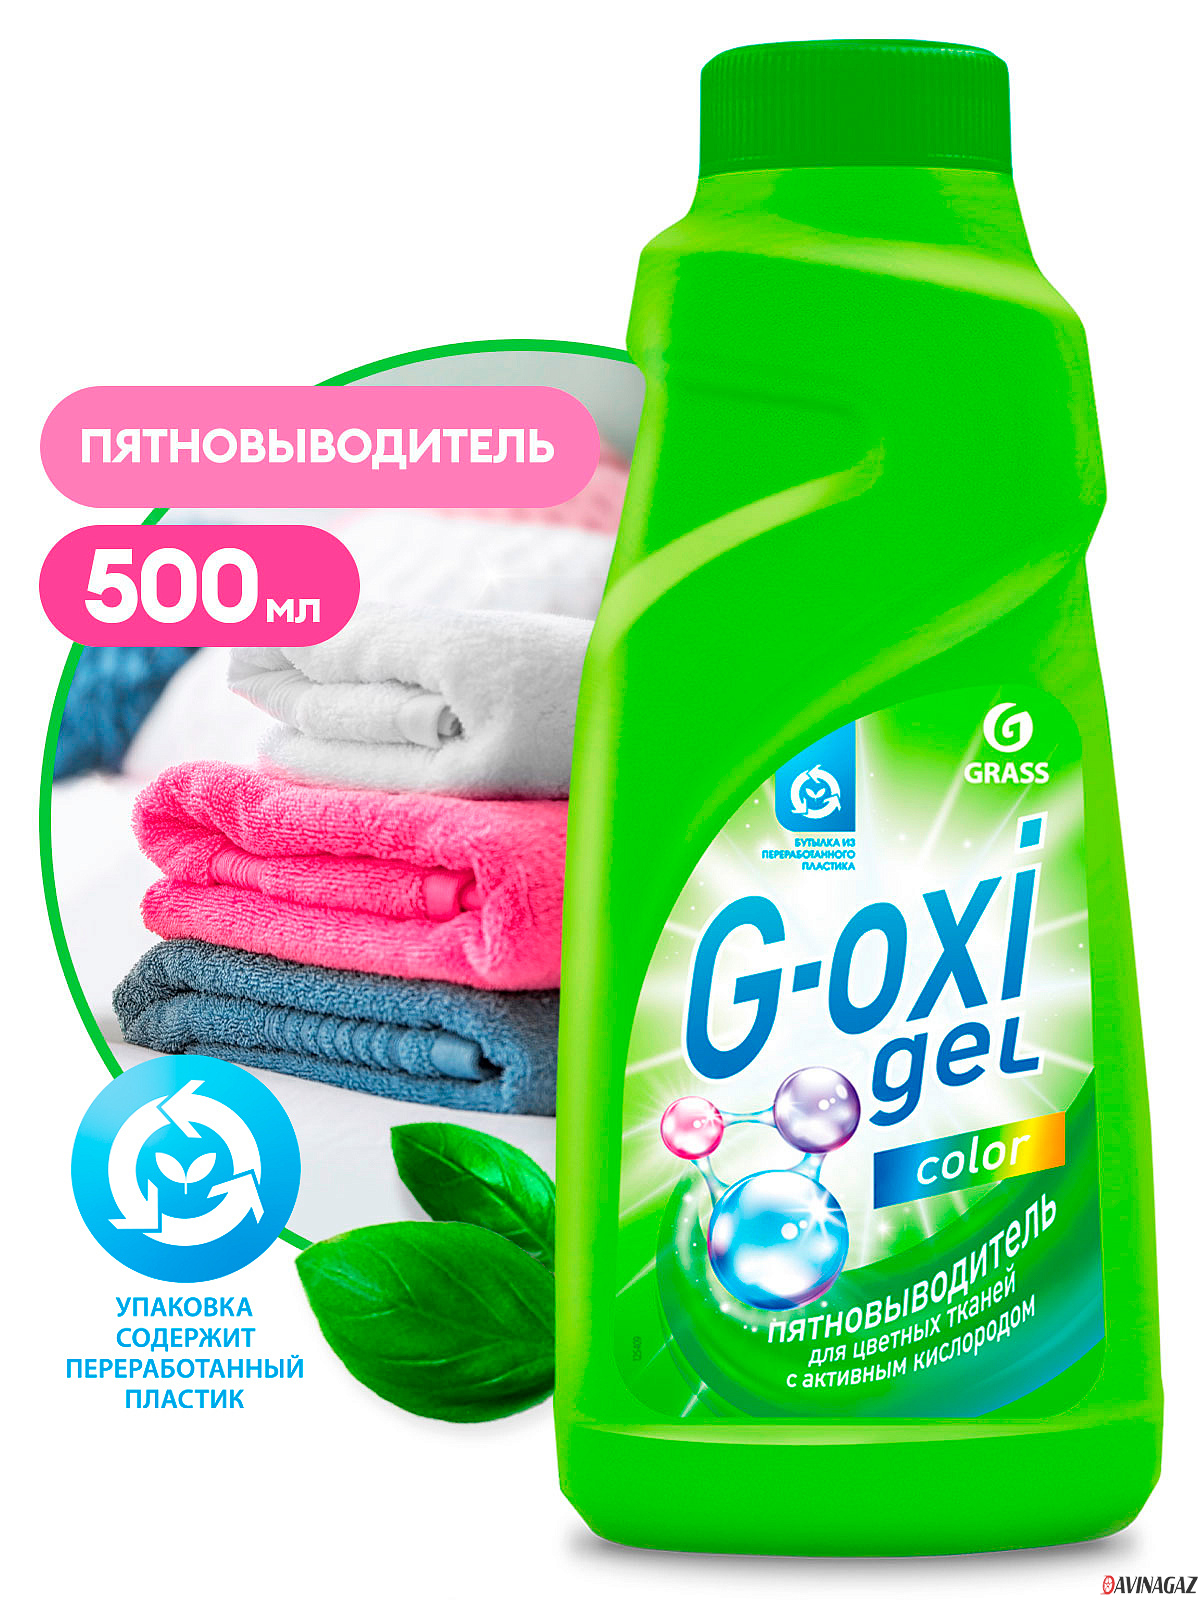 GRASS - Пятновыводитель G-Oxi для цветных вещей с активным кислородом, 500мл / 125409